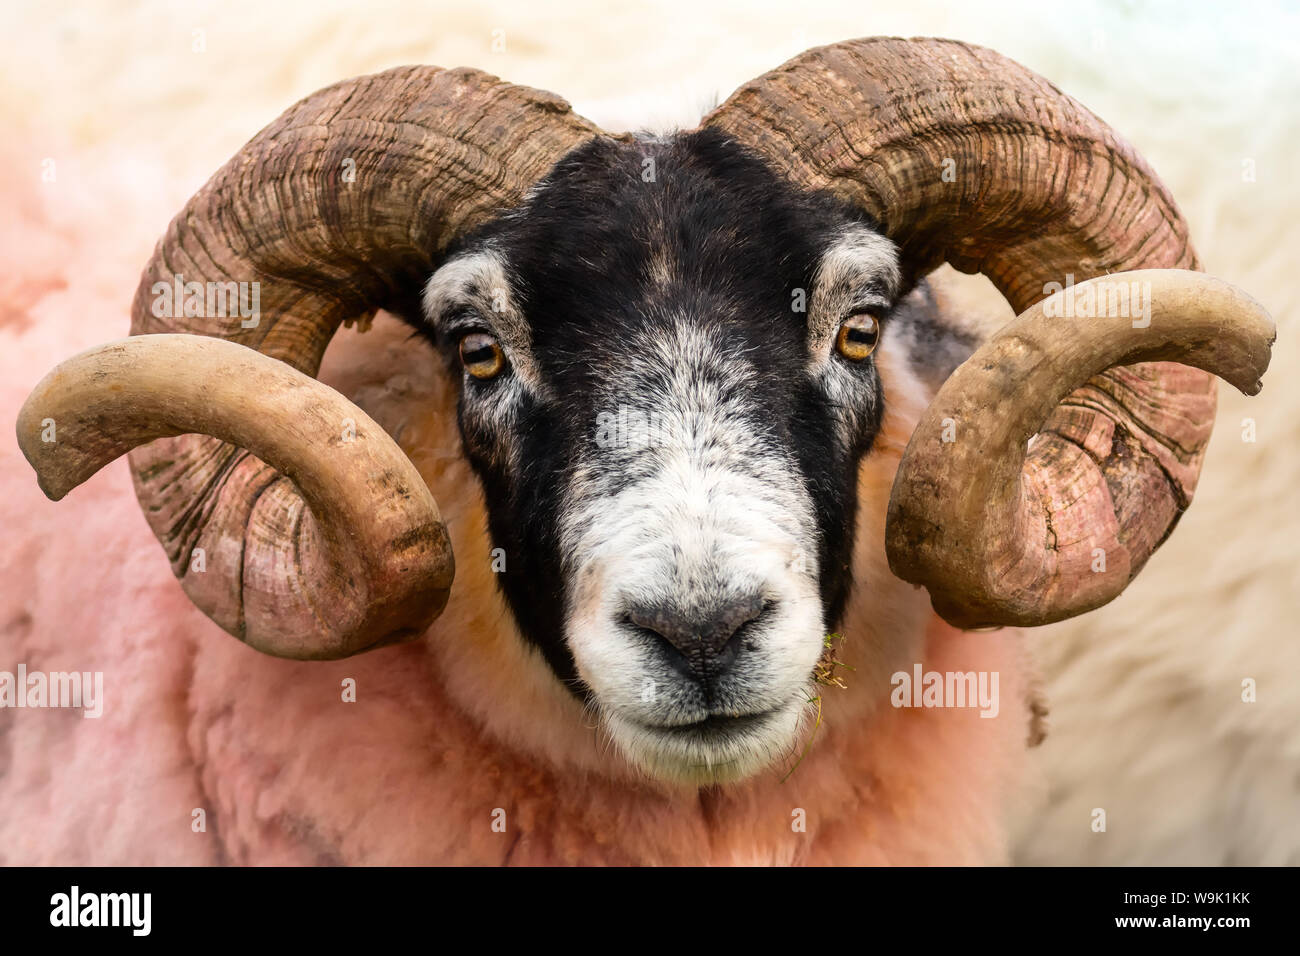 Isle of Mull sheep, Scotland, United Kingdom, Europe Stock Photo